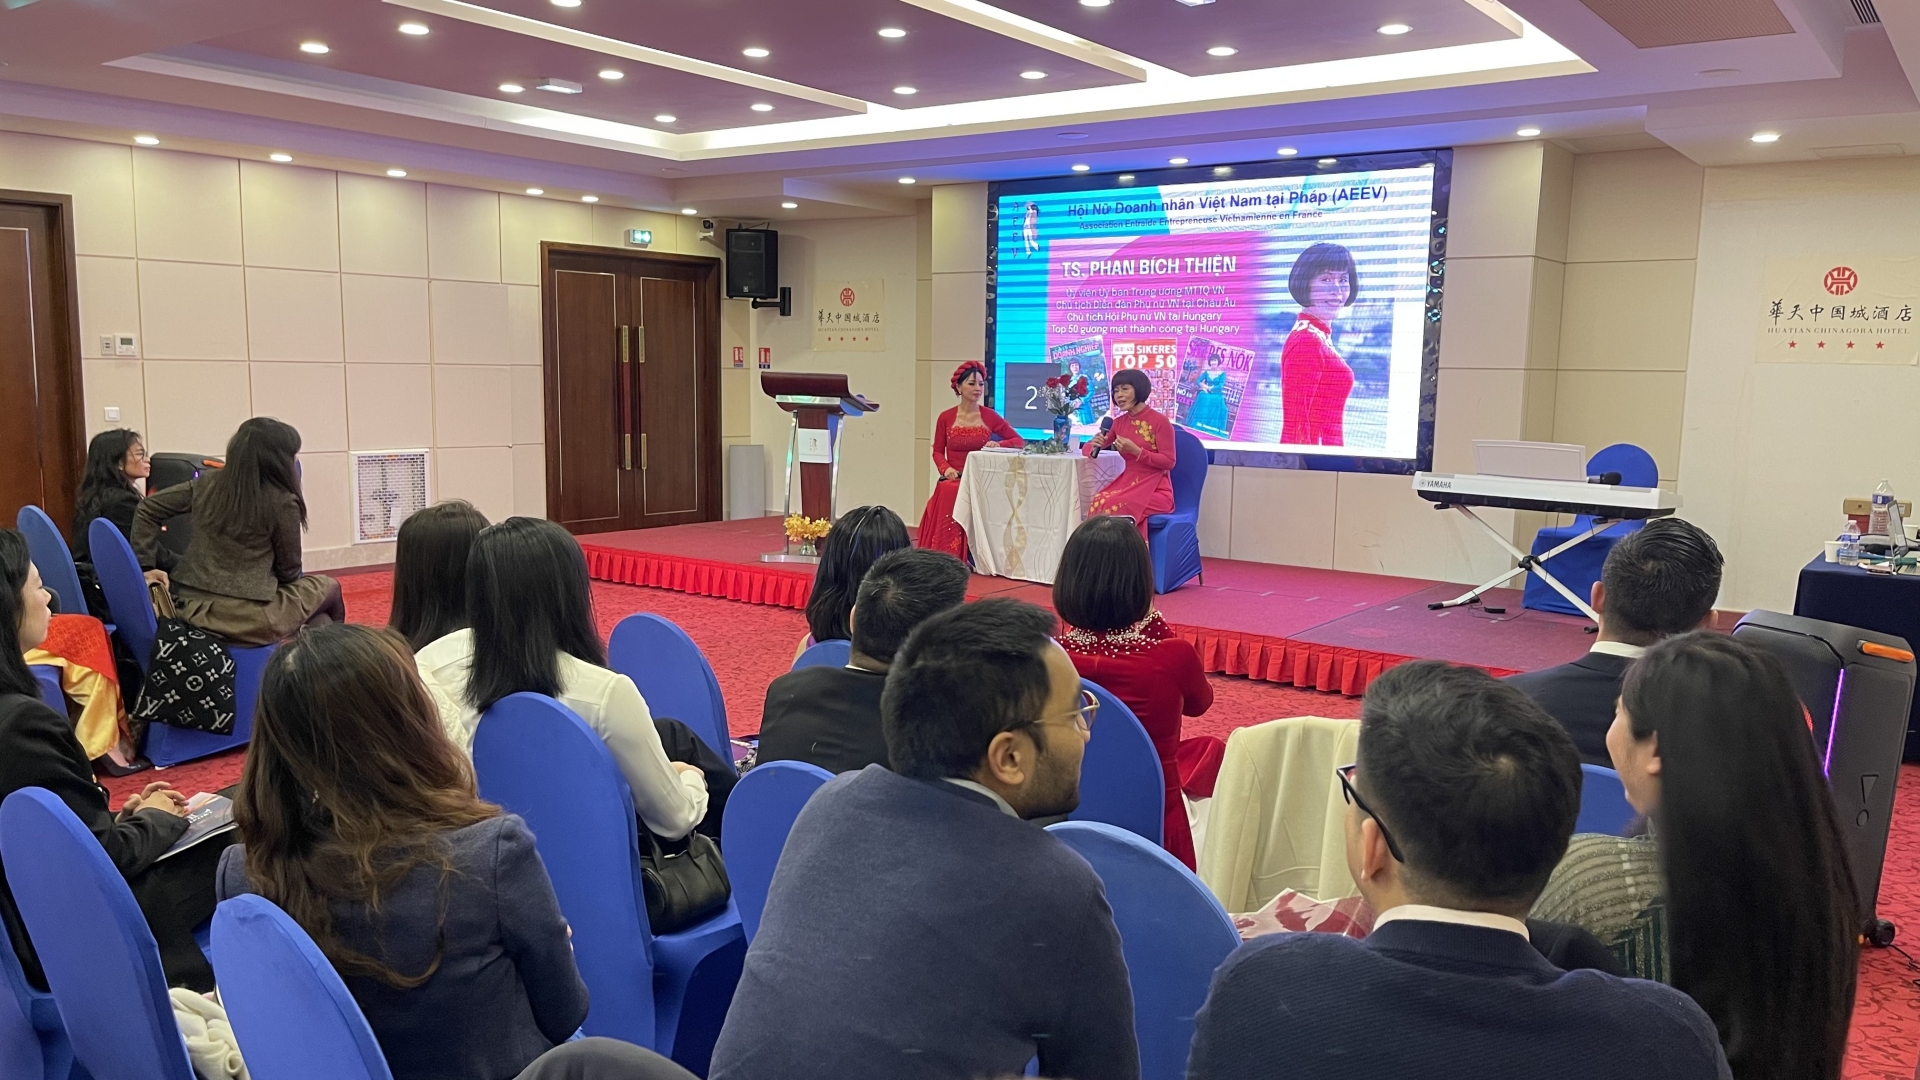 此次活动以“感谢和表彰法国越南女企业家”为主题，吸引了大批在法国越南人界有影响力的女企业家参加，尤其是斯蒂芬妮·杜（Stéphanie Đỗ）——第一位担任法国国民议会议员（2017-2022年任期）的越裔妇女的出席。活动中，会员聆听了斯蒂芬妮·杜女士讲述自己的挣扎以及女性从政时面临的挑战。除了特邀演讲嘉宾外，该节目还邀请律师和投资顾问交流有关法律程序、商法以及投资和贸易机会的信息；同时，为想要在商业领域进一步发展的女性提供有益的建议。组委会还邀请律师和投资顾问前来就法律程序、贸易法、投资贸易机会等方面进行交流，同时为女性代表希望进一步发展经营活动建言献策。值此机会，AEEV表彰了为2023年该协会的活动做出积极贡献的优秀女性企业家。AEEV成立于2022年底，是一个连接旅居法国和其他国家的越南女企业家网络的非政府组织，意在帮助旅外越南女企业在商场上互相帮助，分享经验，并在法律程序、投资、贸易、定居法国等发面提供支持。此外，该协会还在法国和越南举行有关孤儿、自闭症儿童、老人、残疾人、贫困患者等爱心活动。